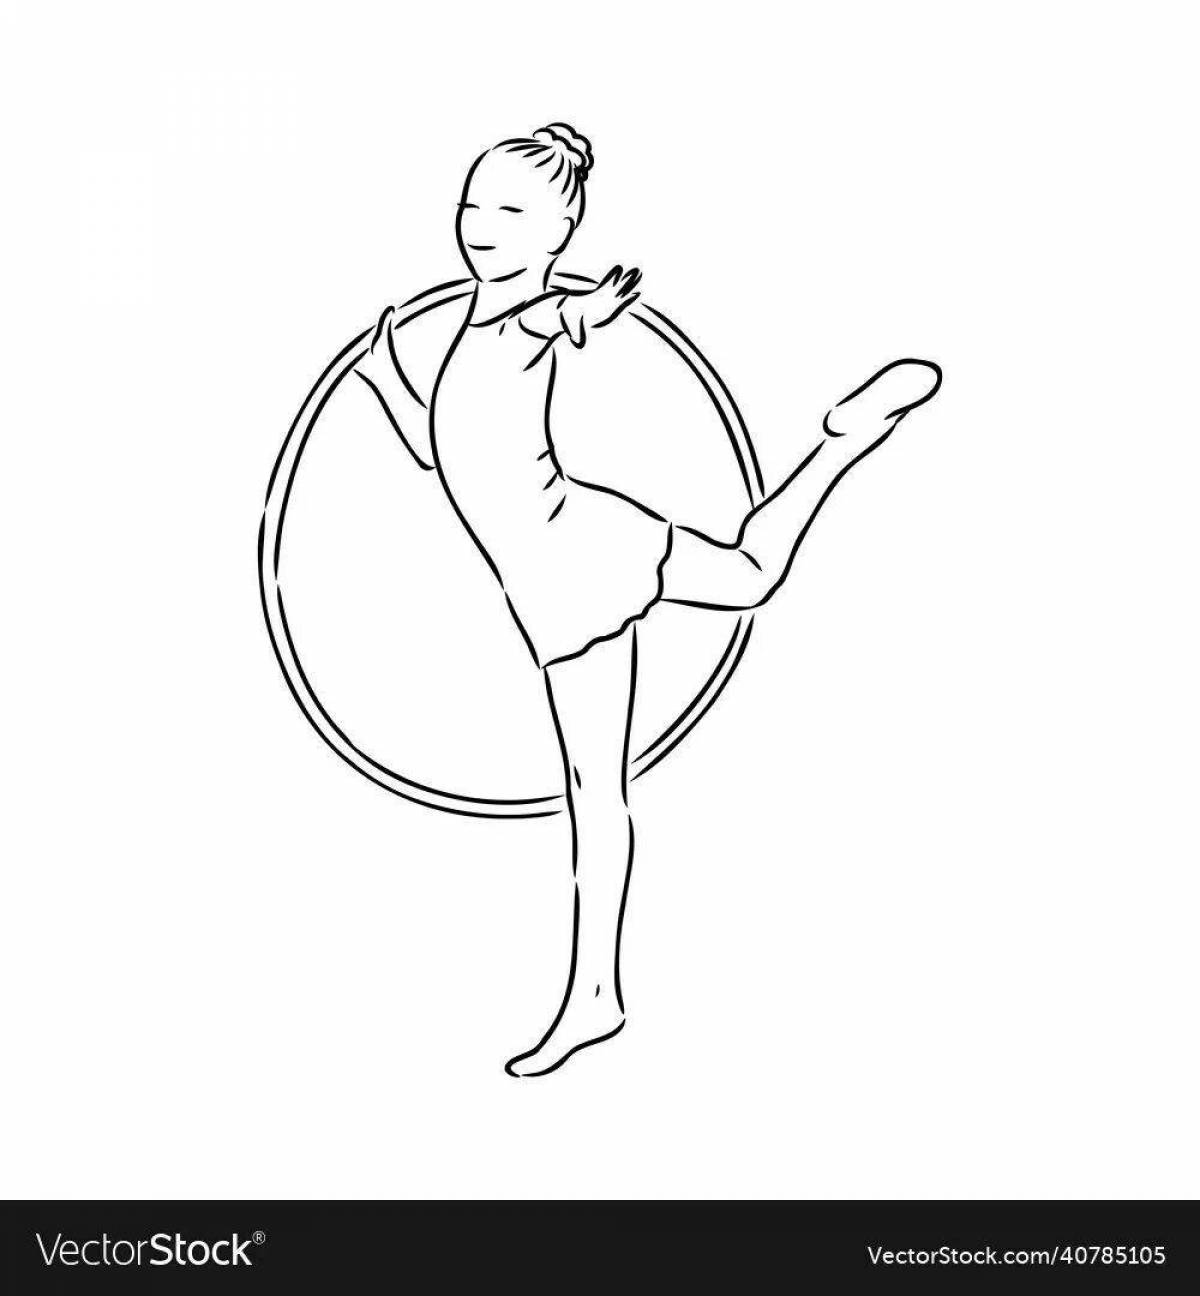 Agile gymnast with a hoop